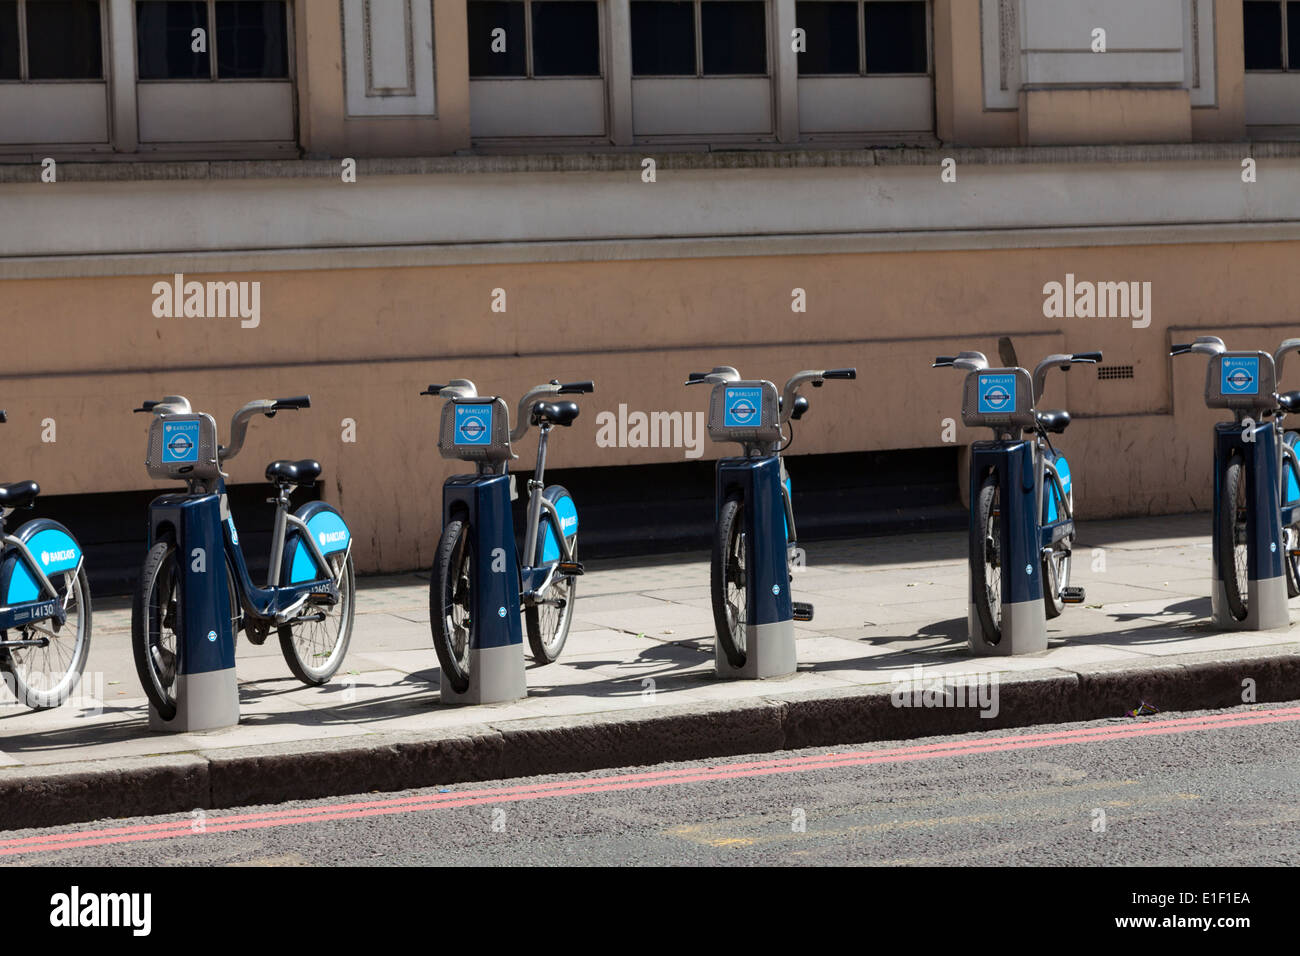 Barclays parrainé location régime. surnommé Boris de vélos, Location de vélo Bike station d'accueil à Londres Banque D'Images